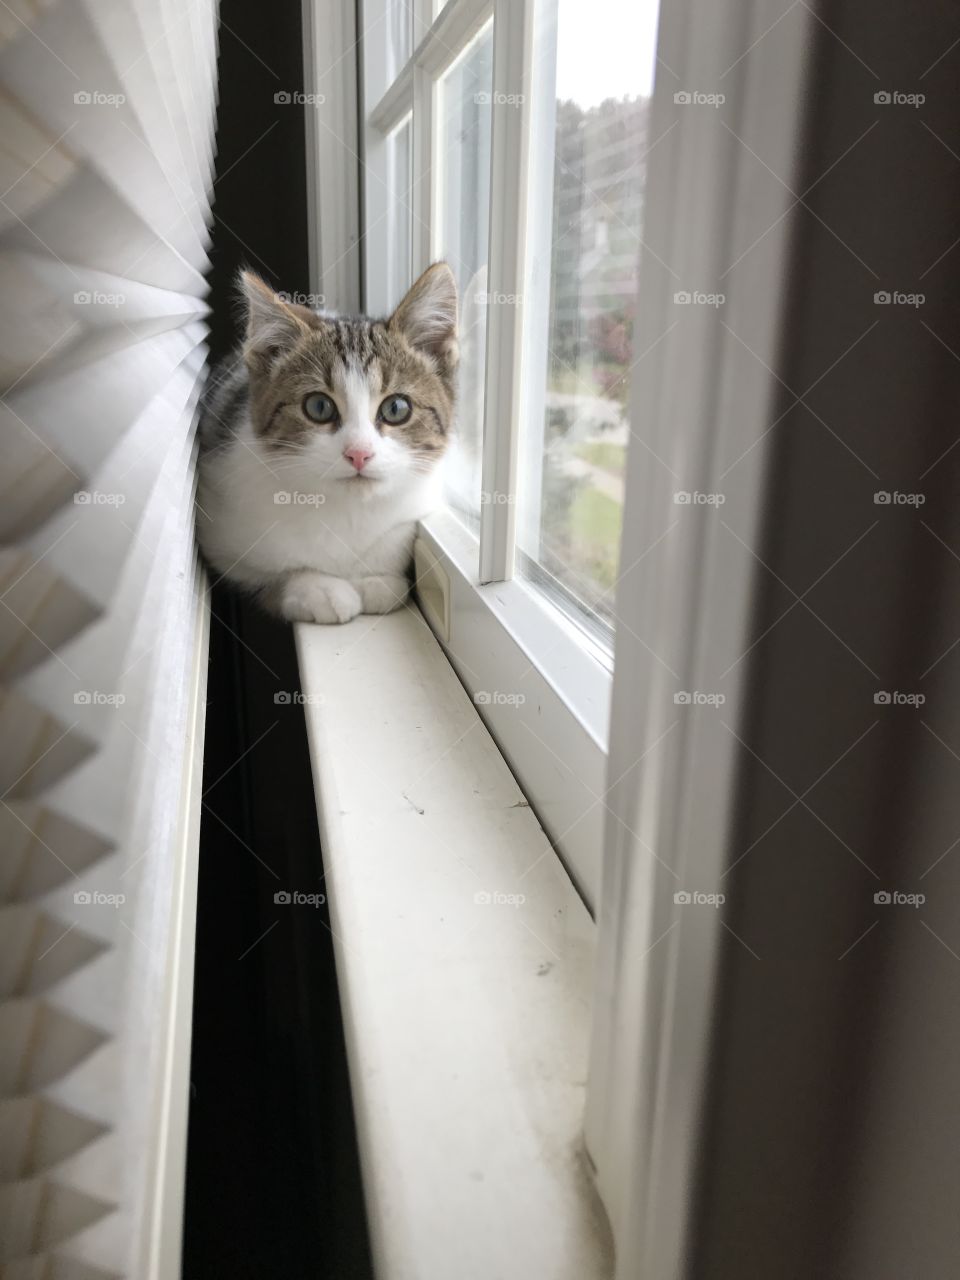 Kitty on window sill